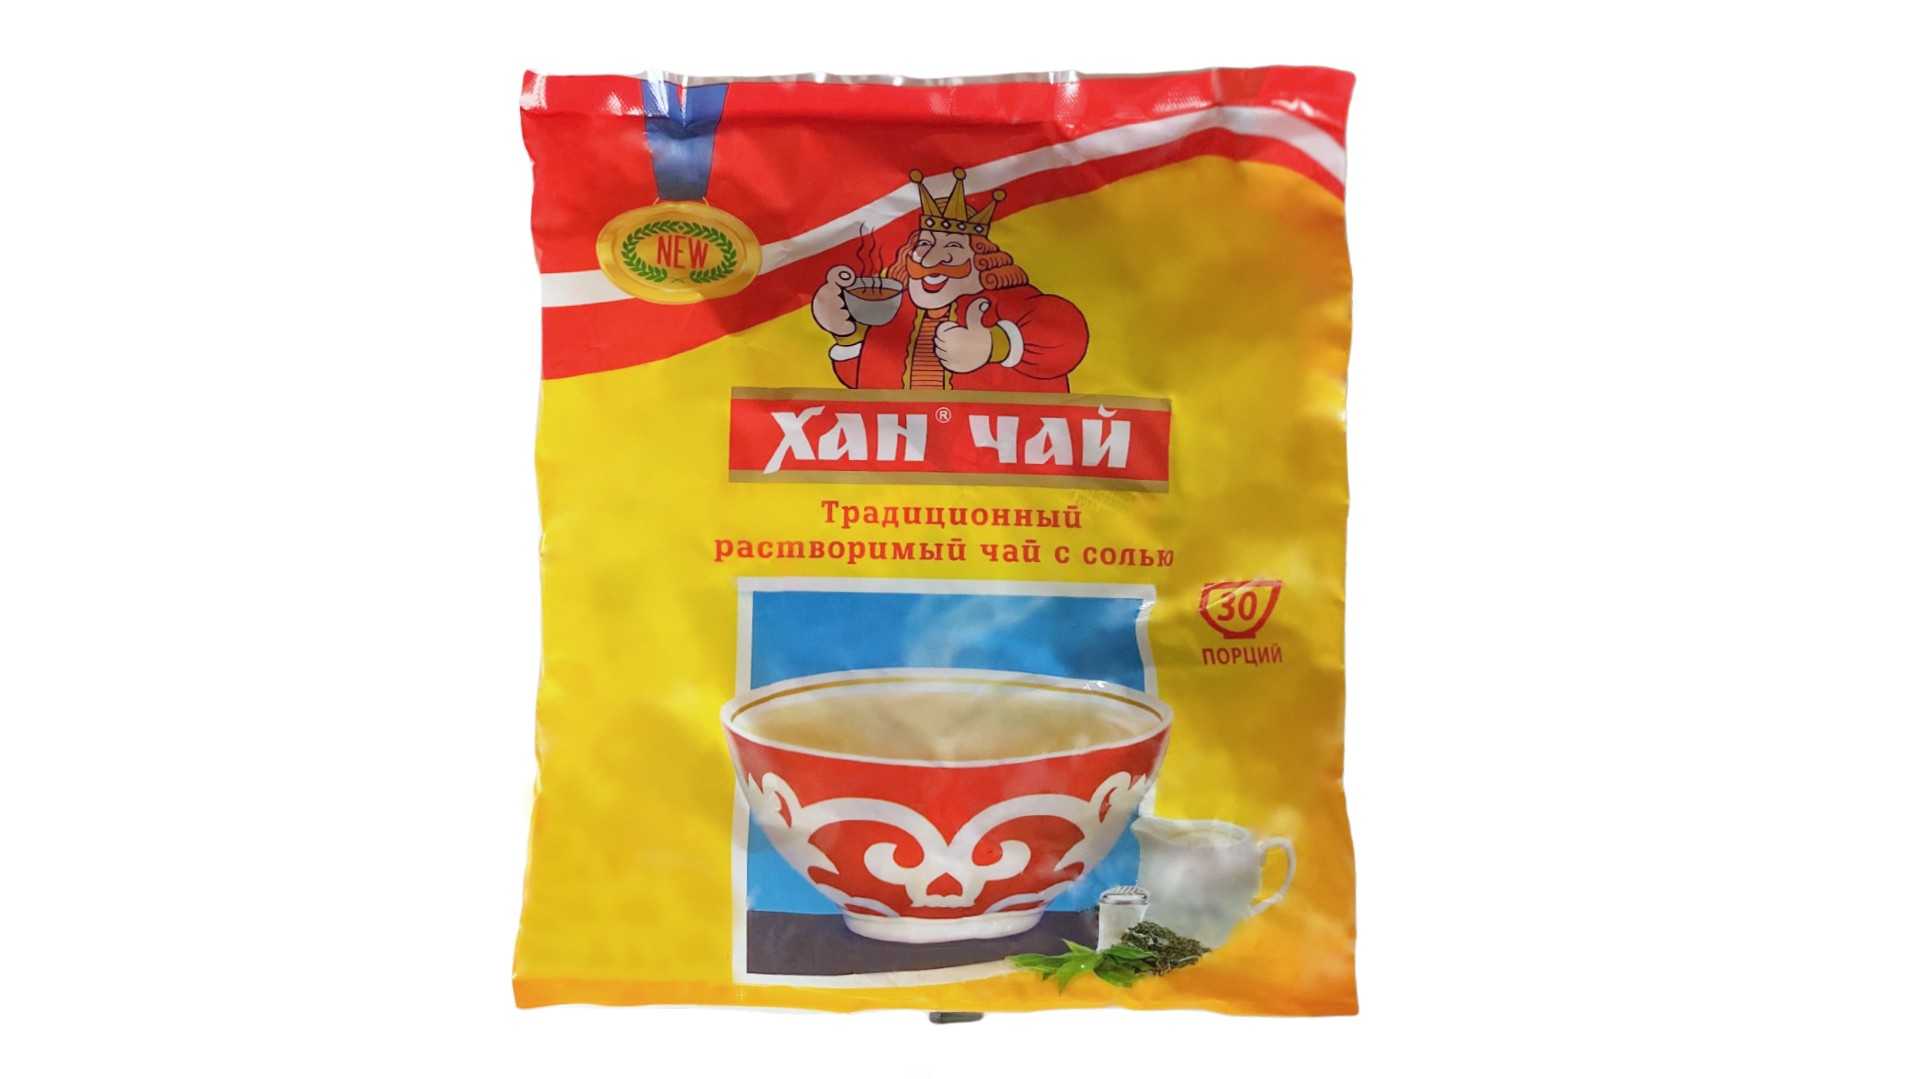 Хан чай с солью купить в украине сколько спайс держится в организме